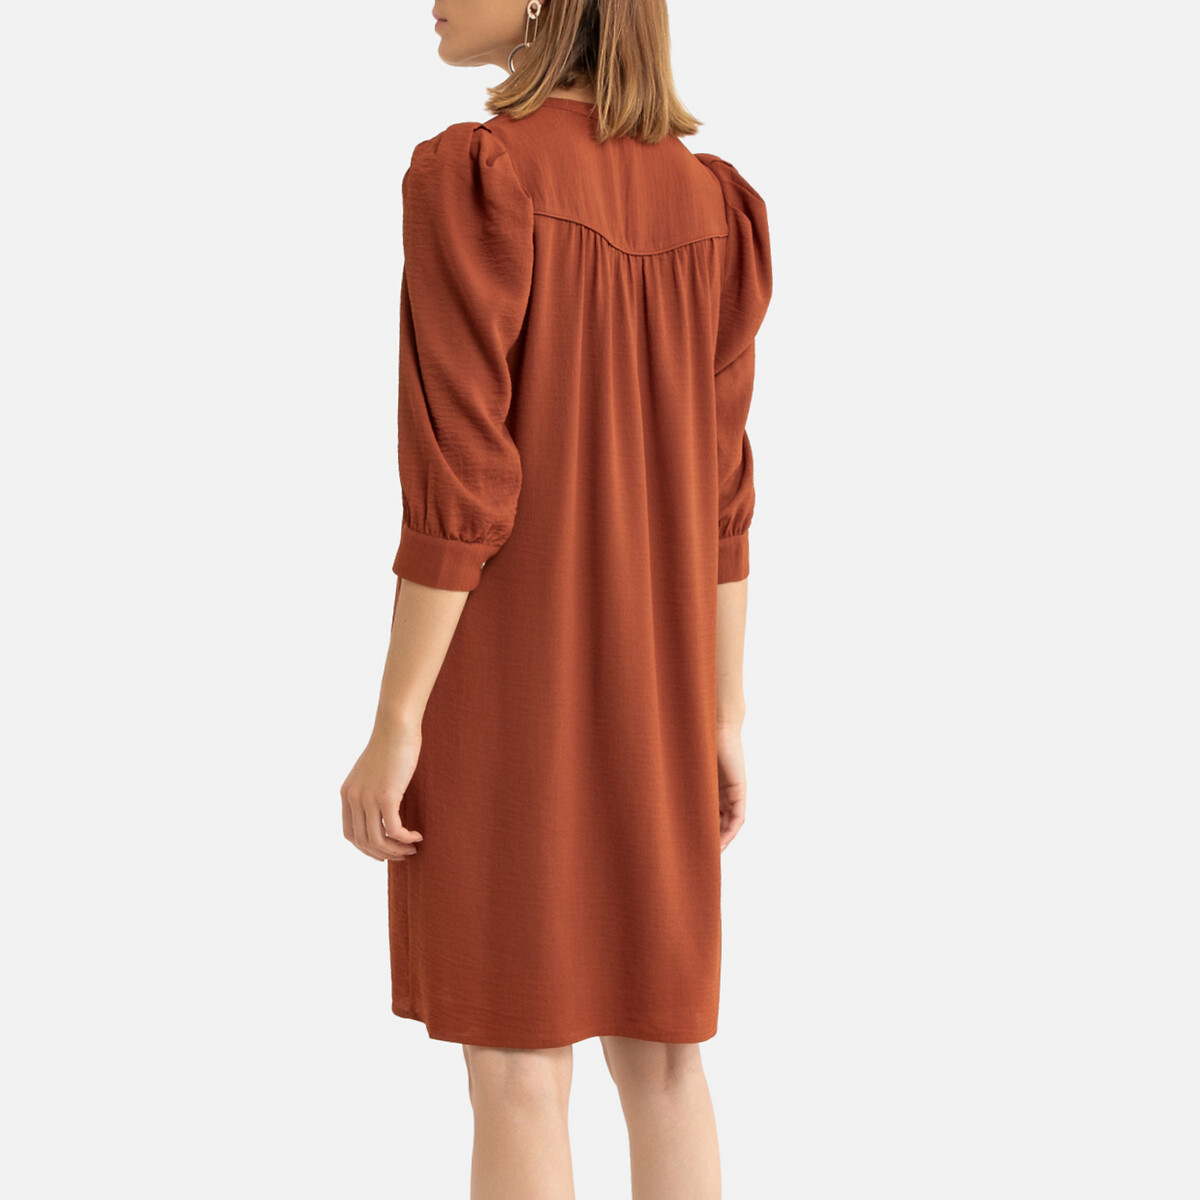 Платье La Redoute Короткое на пуговицах длинные рукава 2(M) красный, размер 2(M) Короткое на пуговицах длинные рукава 2(M) красный - фото 4